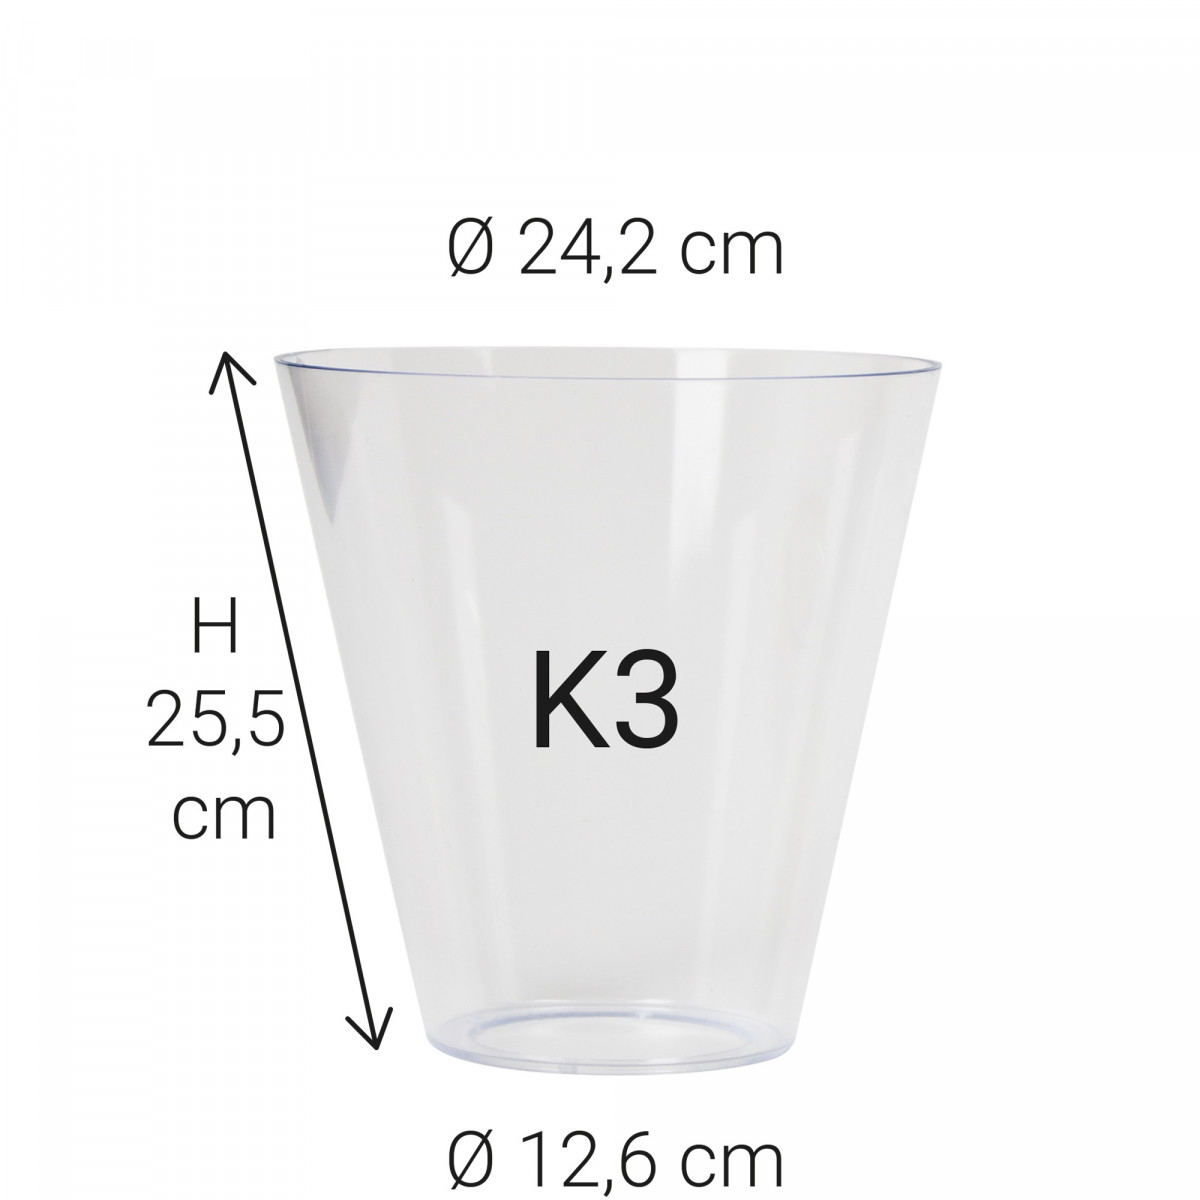 Echt glas K3